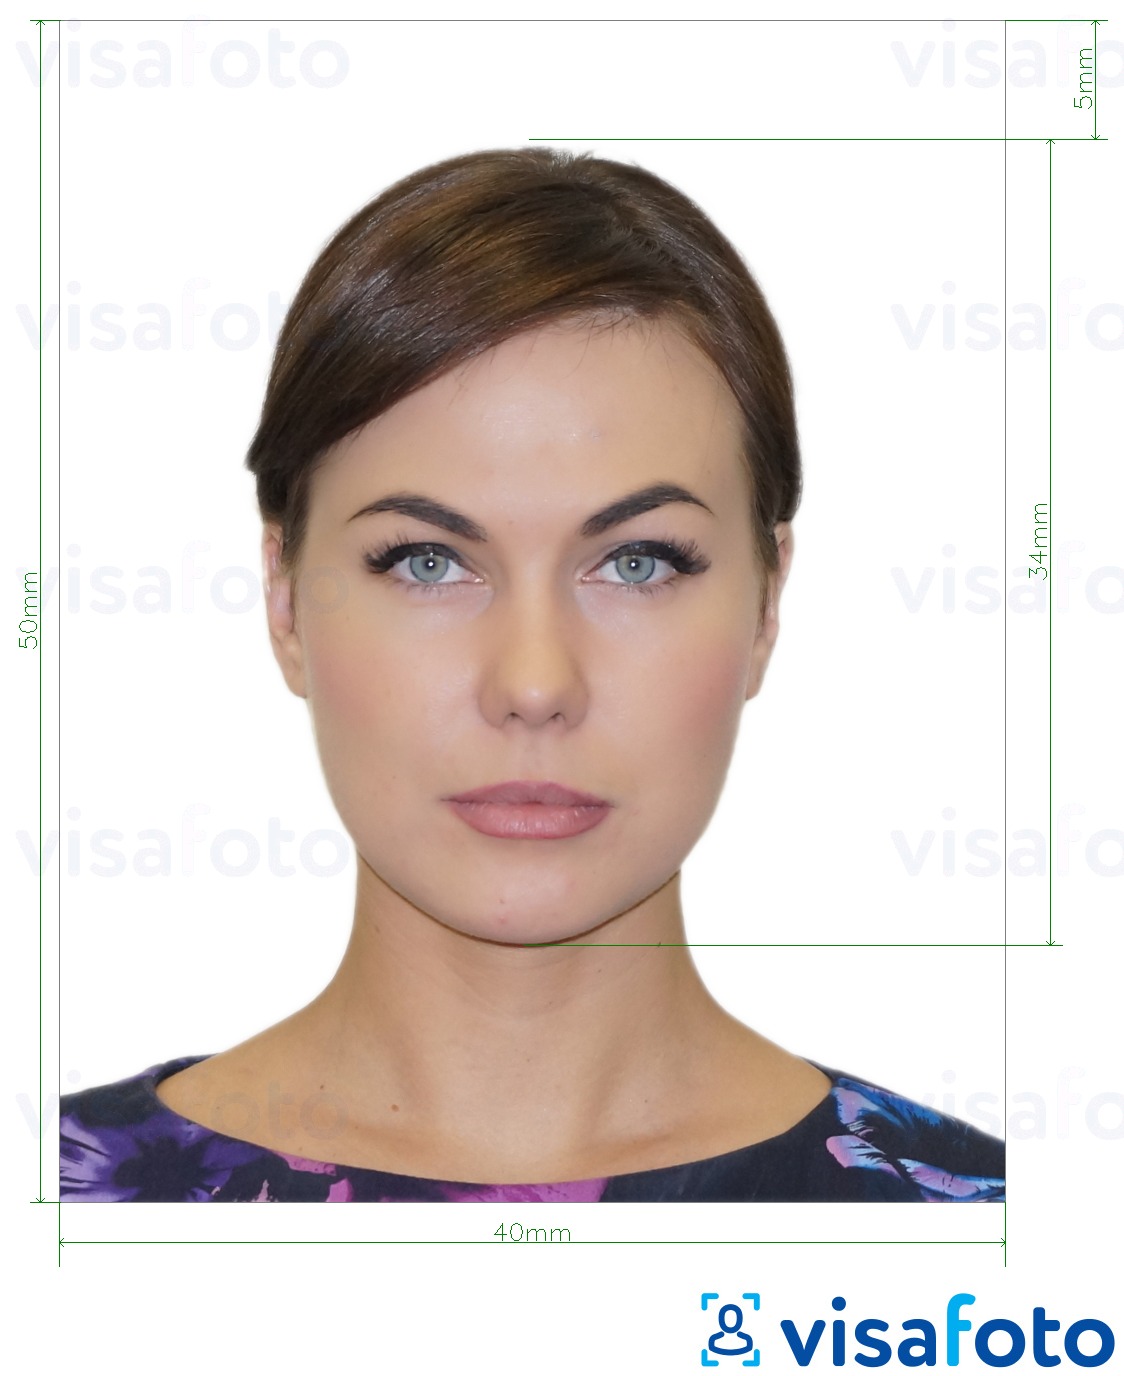 Contoh dari foto untuk Albania e-visa 4x5 cm dengan ukuran spesifikasi yang tepat